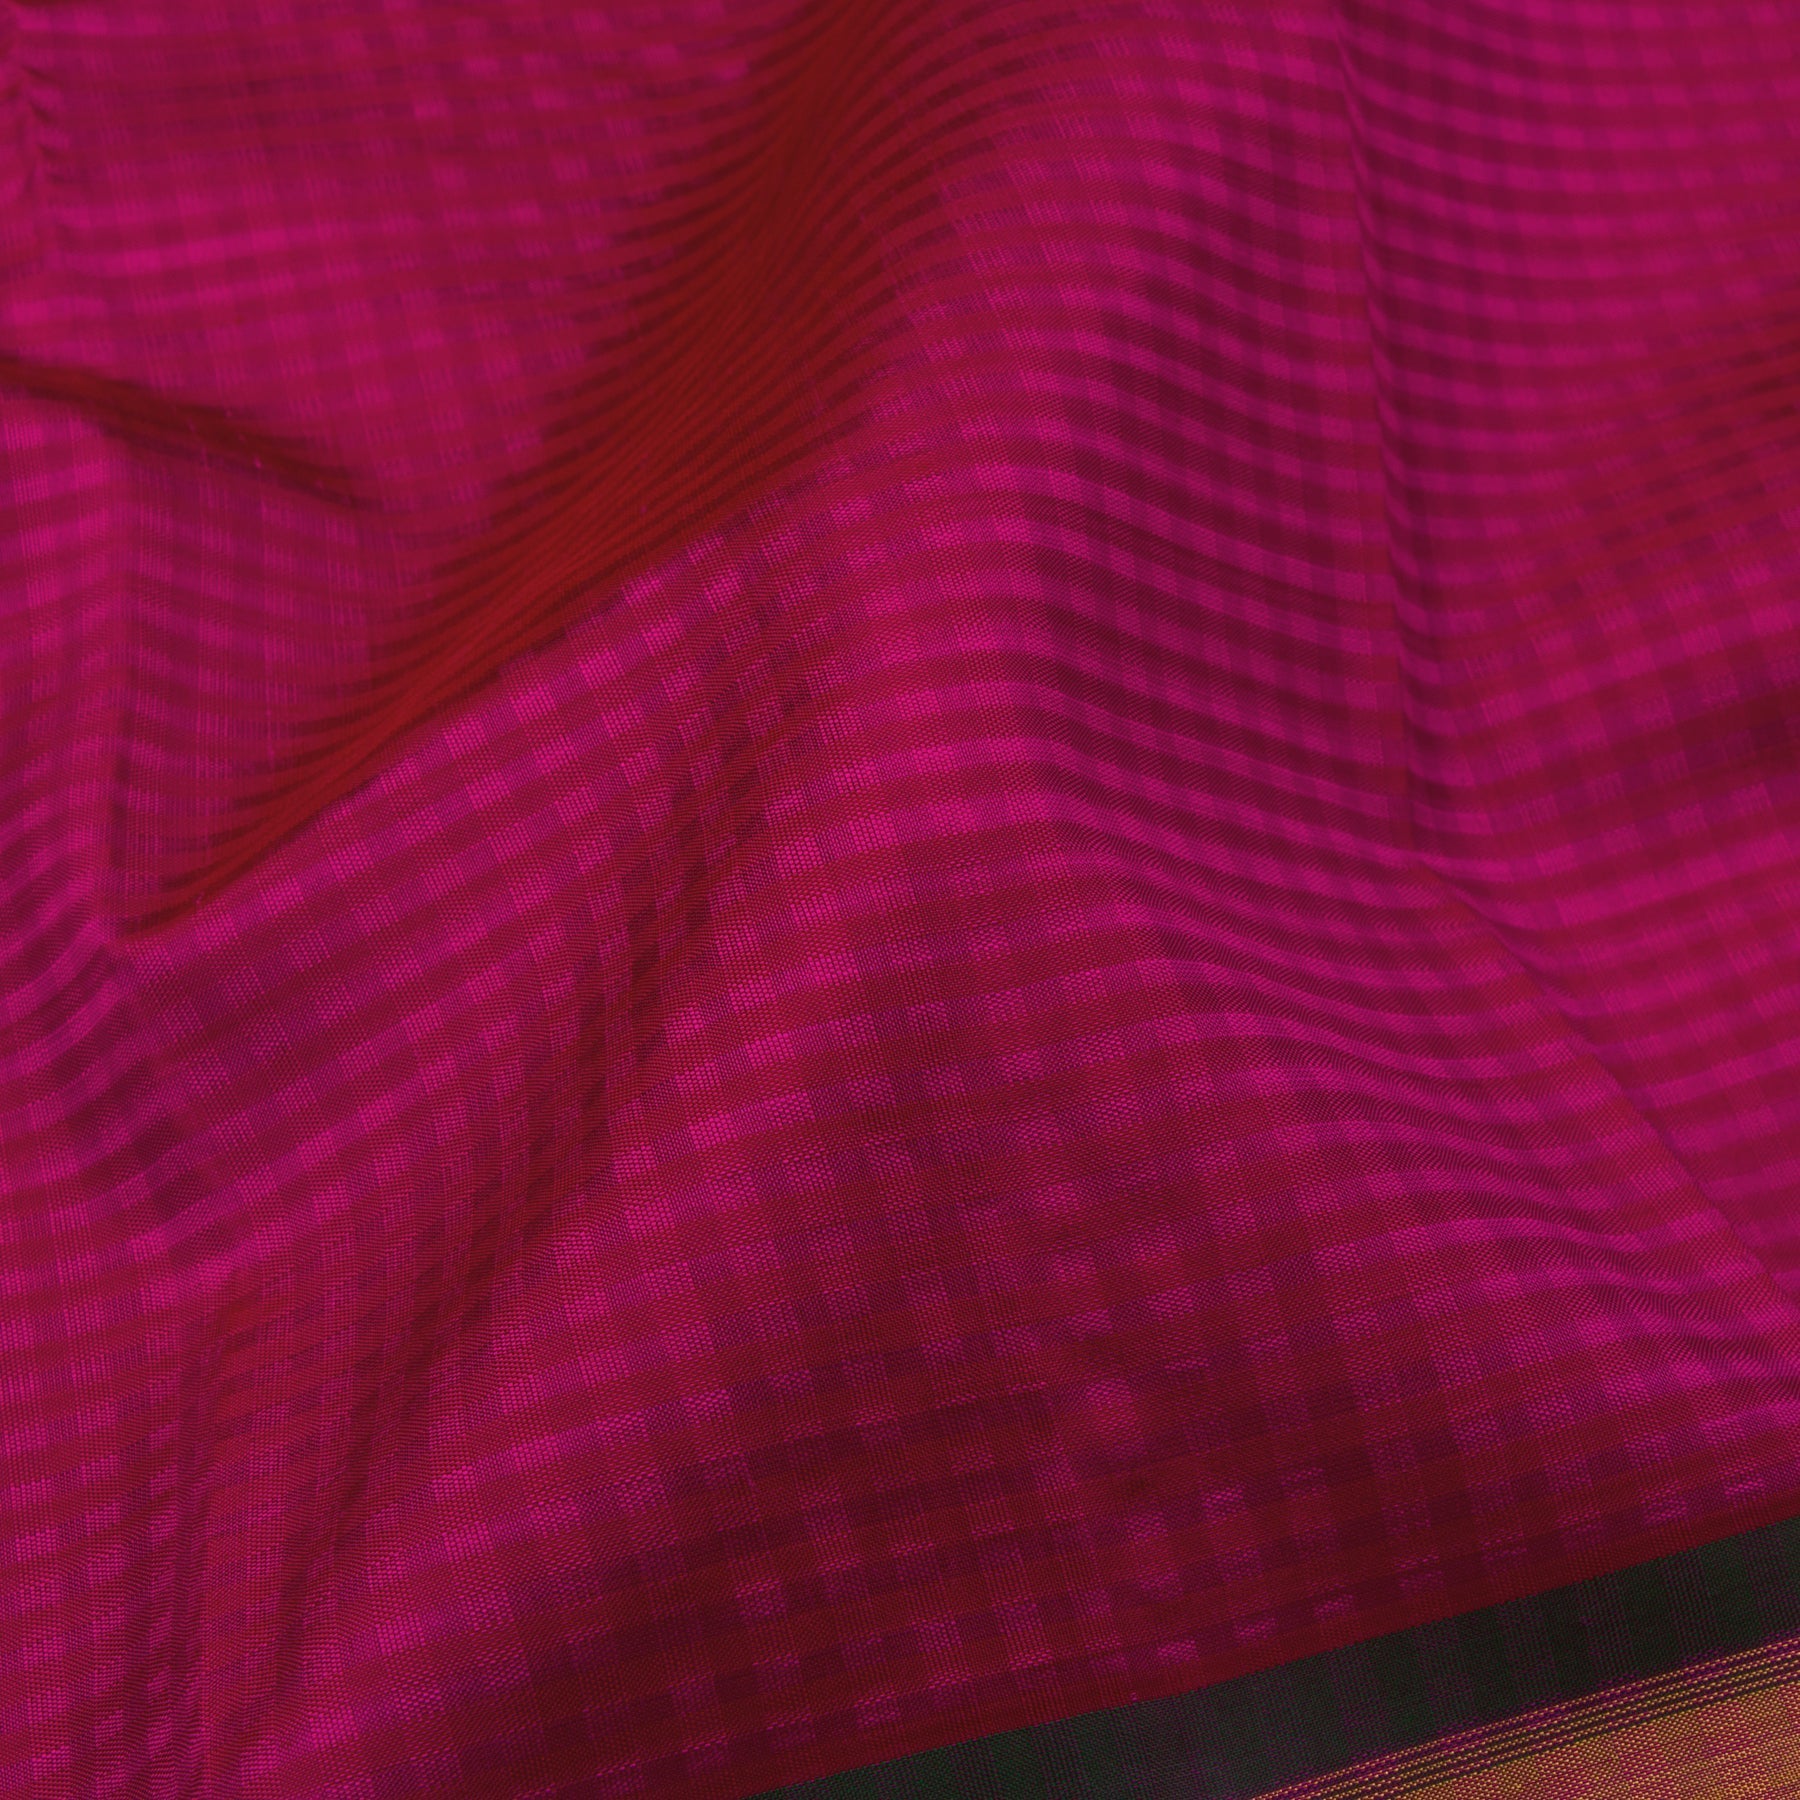 Kanakavalli Kanjivaram Silk Sari 23-599-HS001-00727 - Fabric View